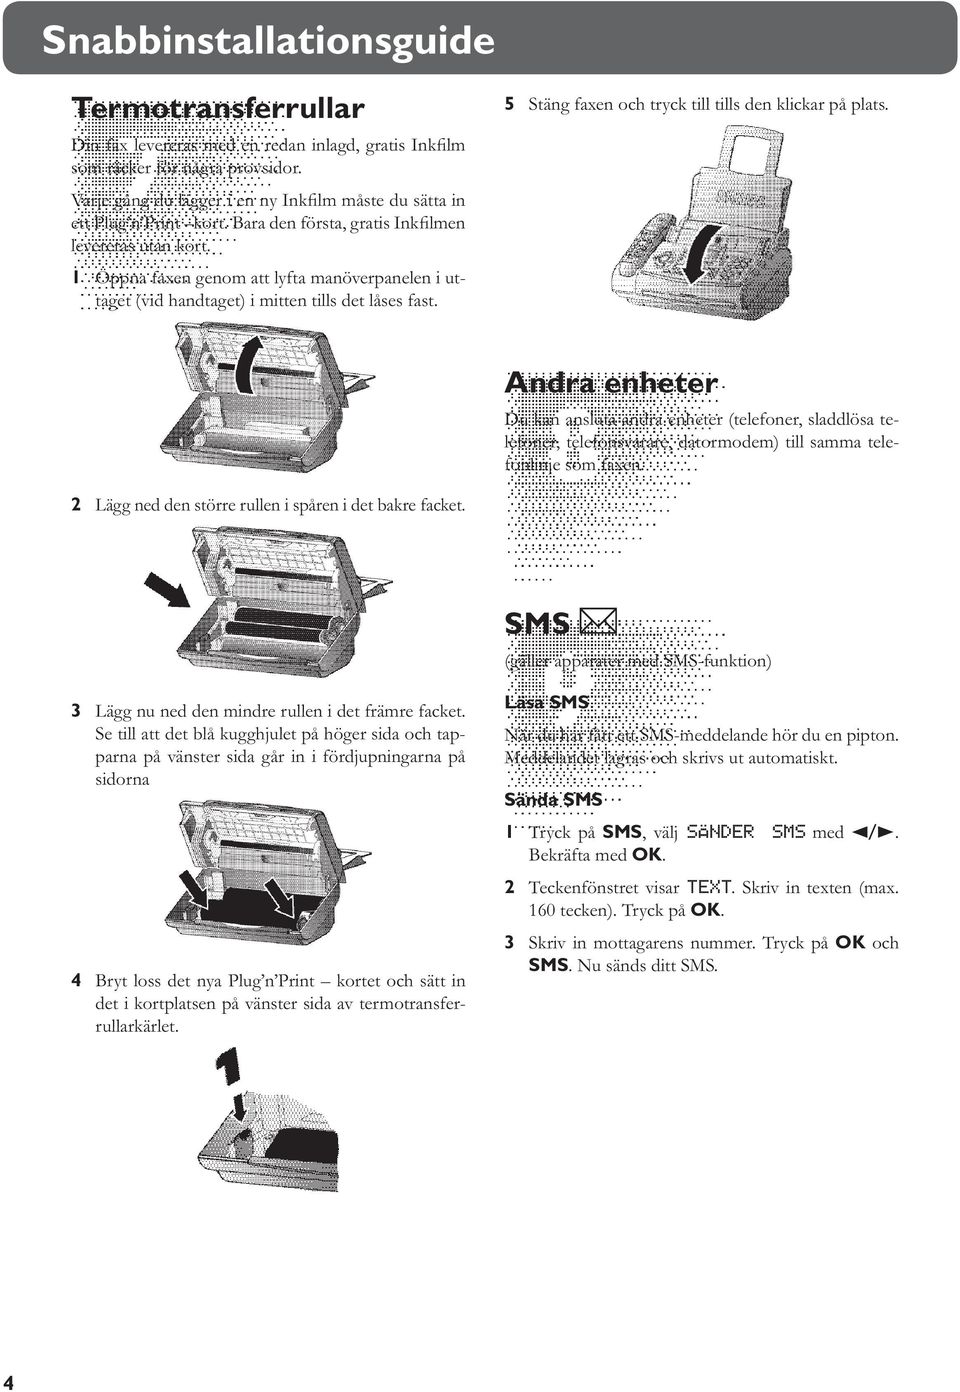 1 Öppna faxen genom att lyfta manöverpanelen i uttaget (vid handtaget) i mitten tills det låses fast. 5 Stäng faxen och tryck till tills den klickar på plats.